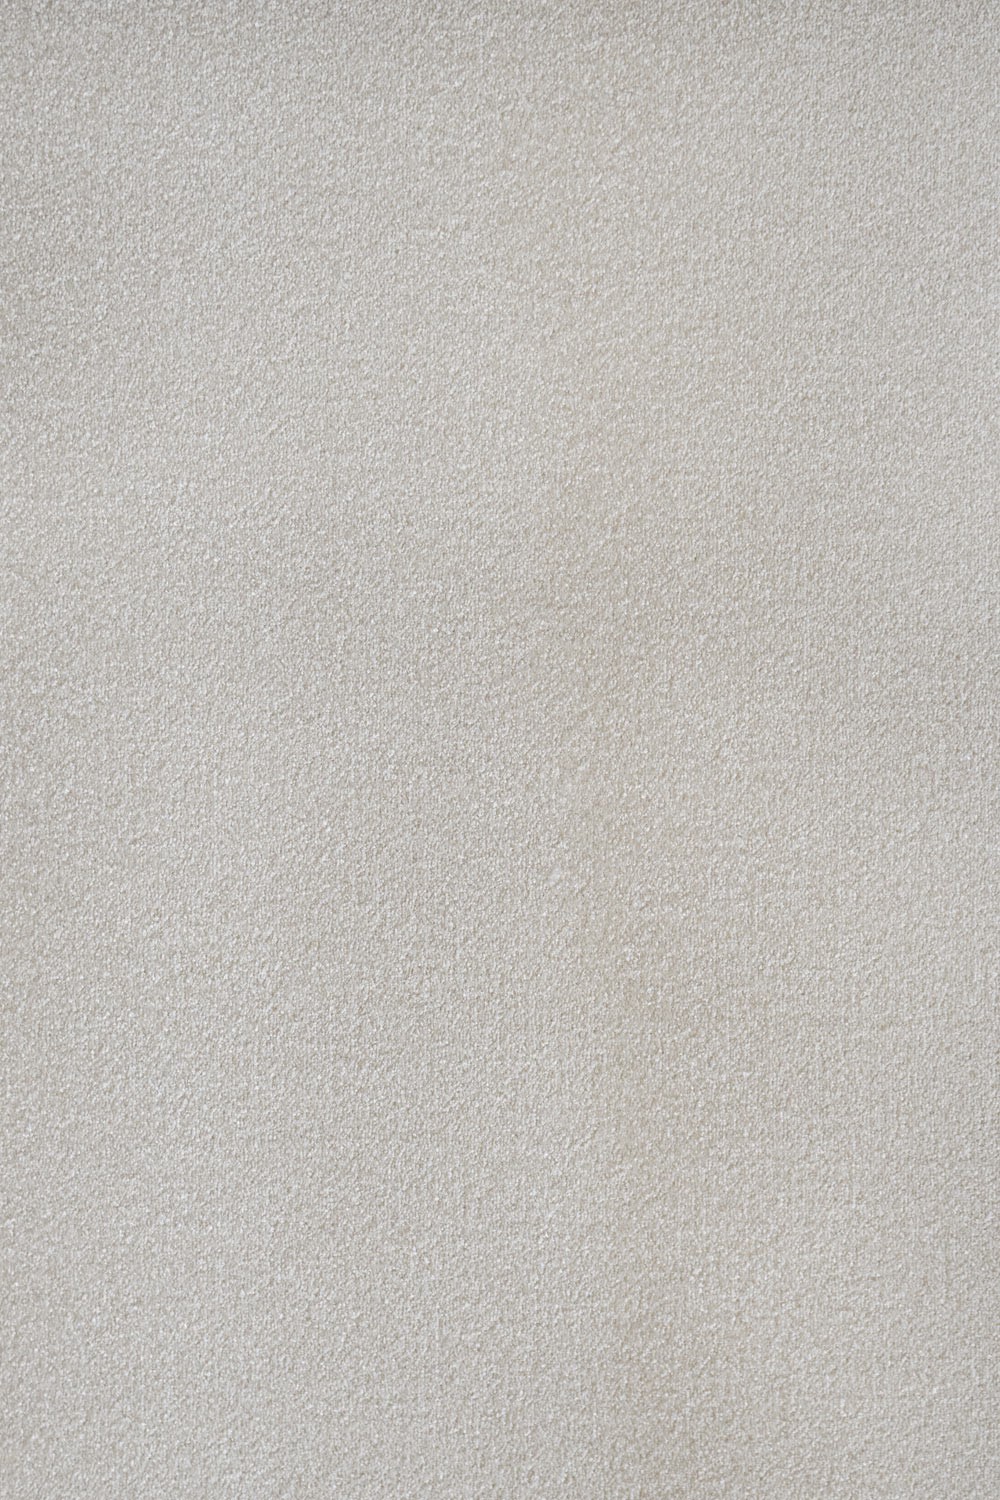 Metrážny koberec Nike Gusto 37 - Zvyšok 100x340 cm